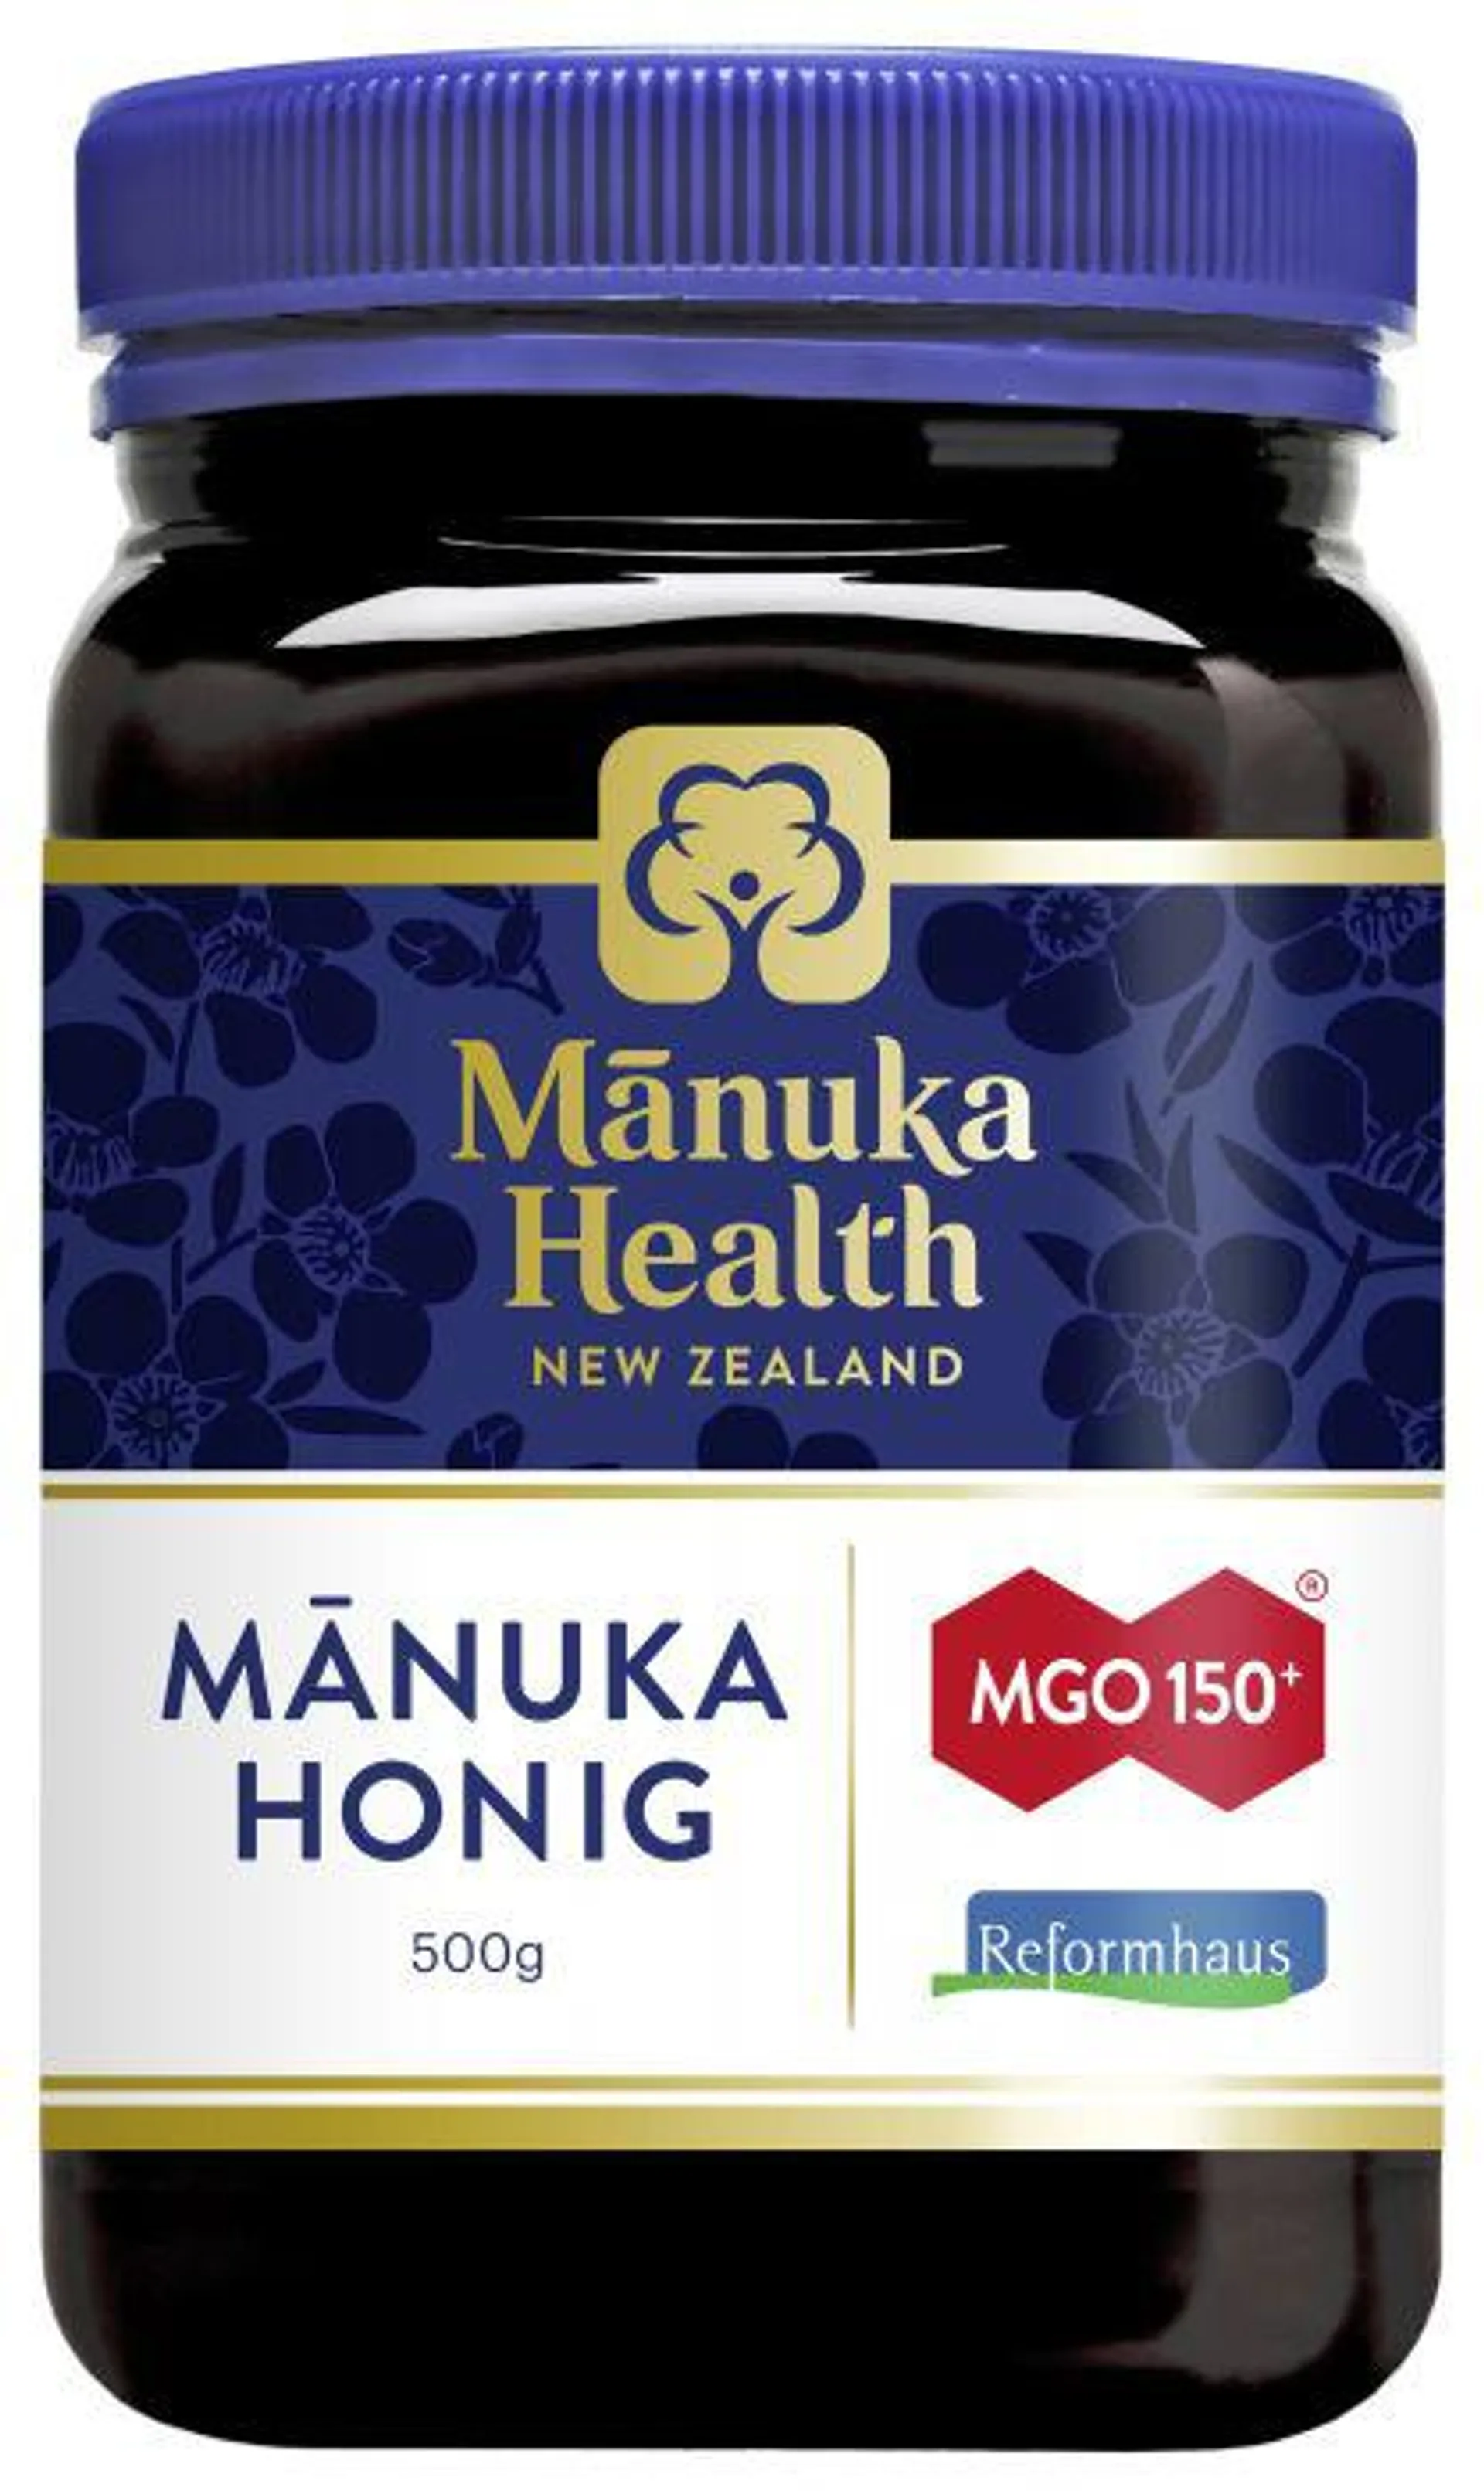 Manuka Health Manuka Honig MGO 150+, 500g 500g